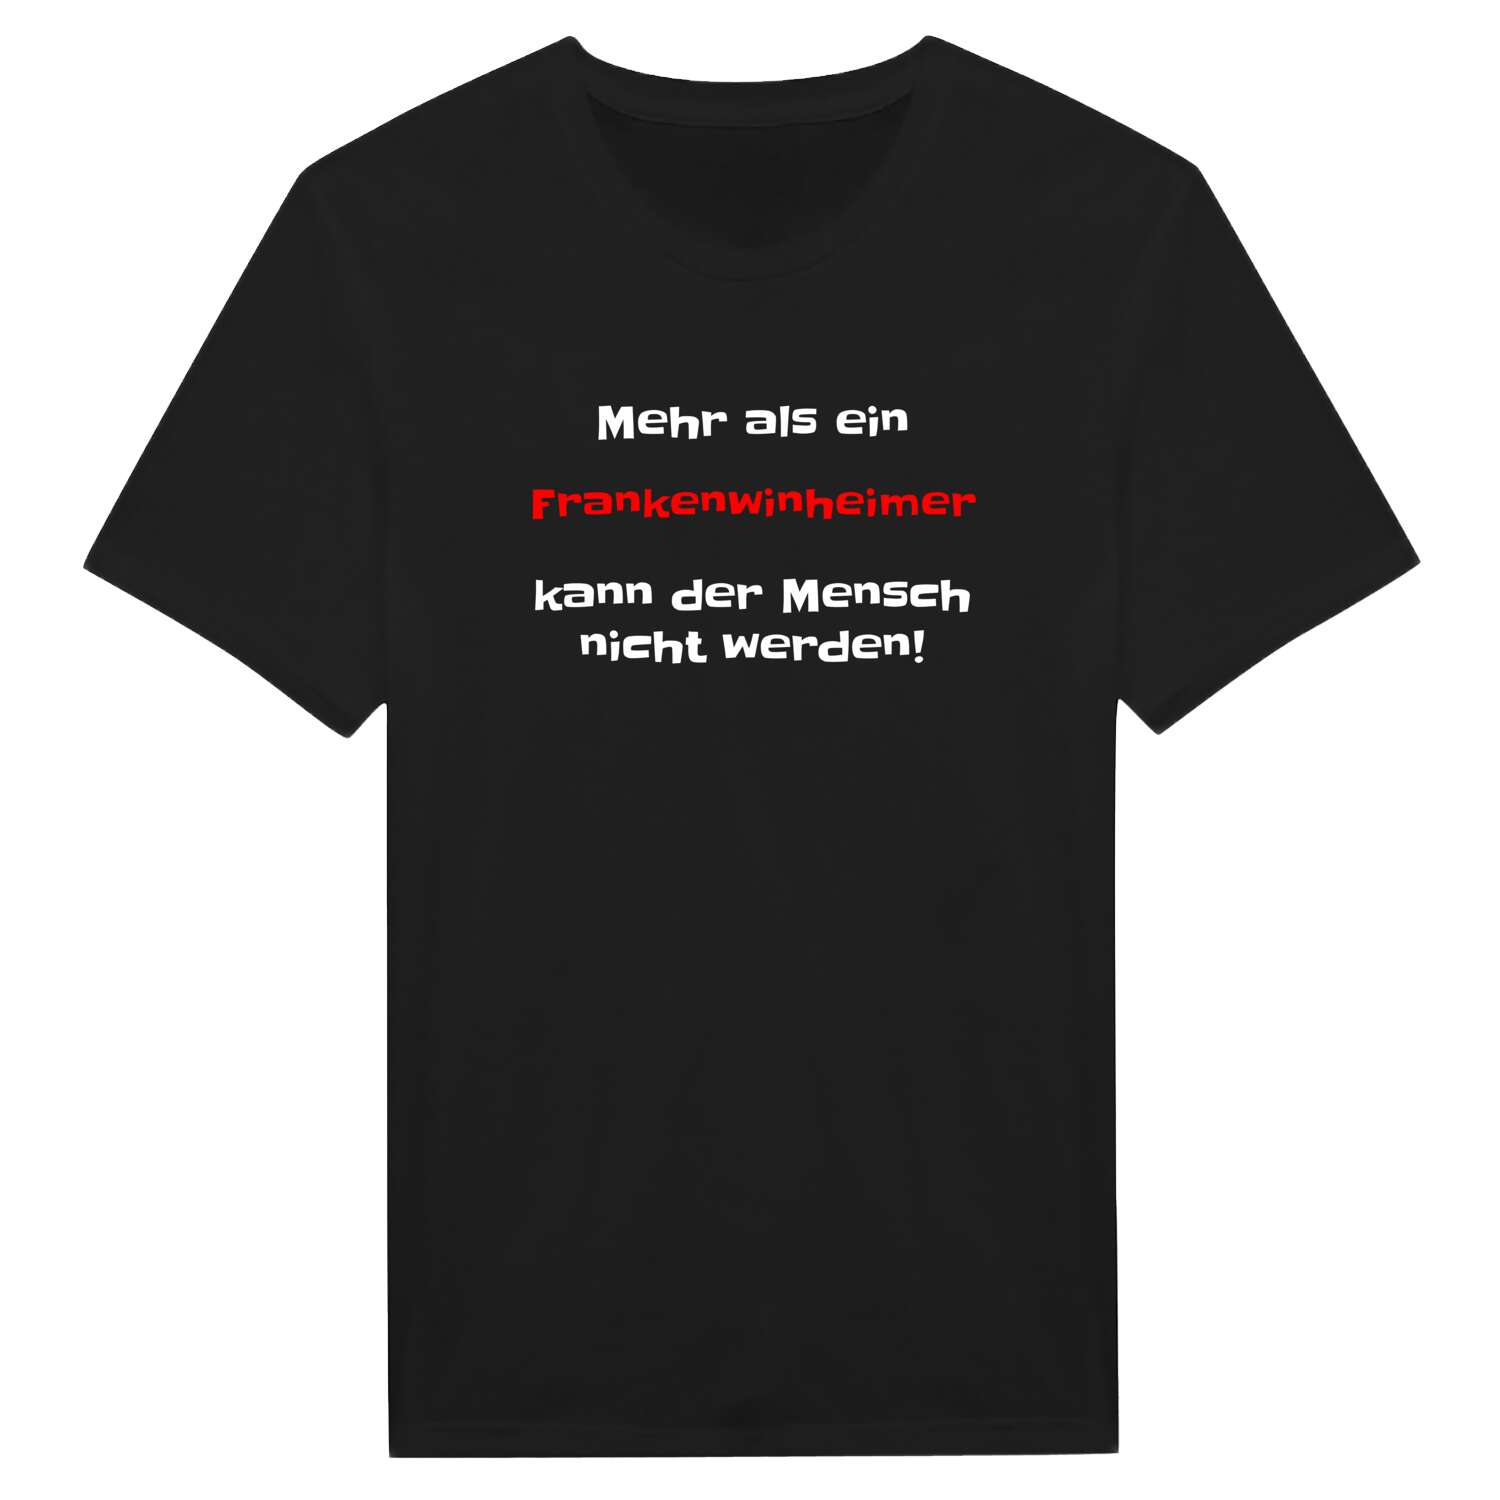 Frankenwinheim T-Shirt »Mehr als ein«